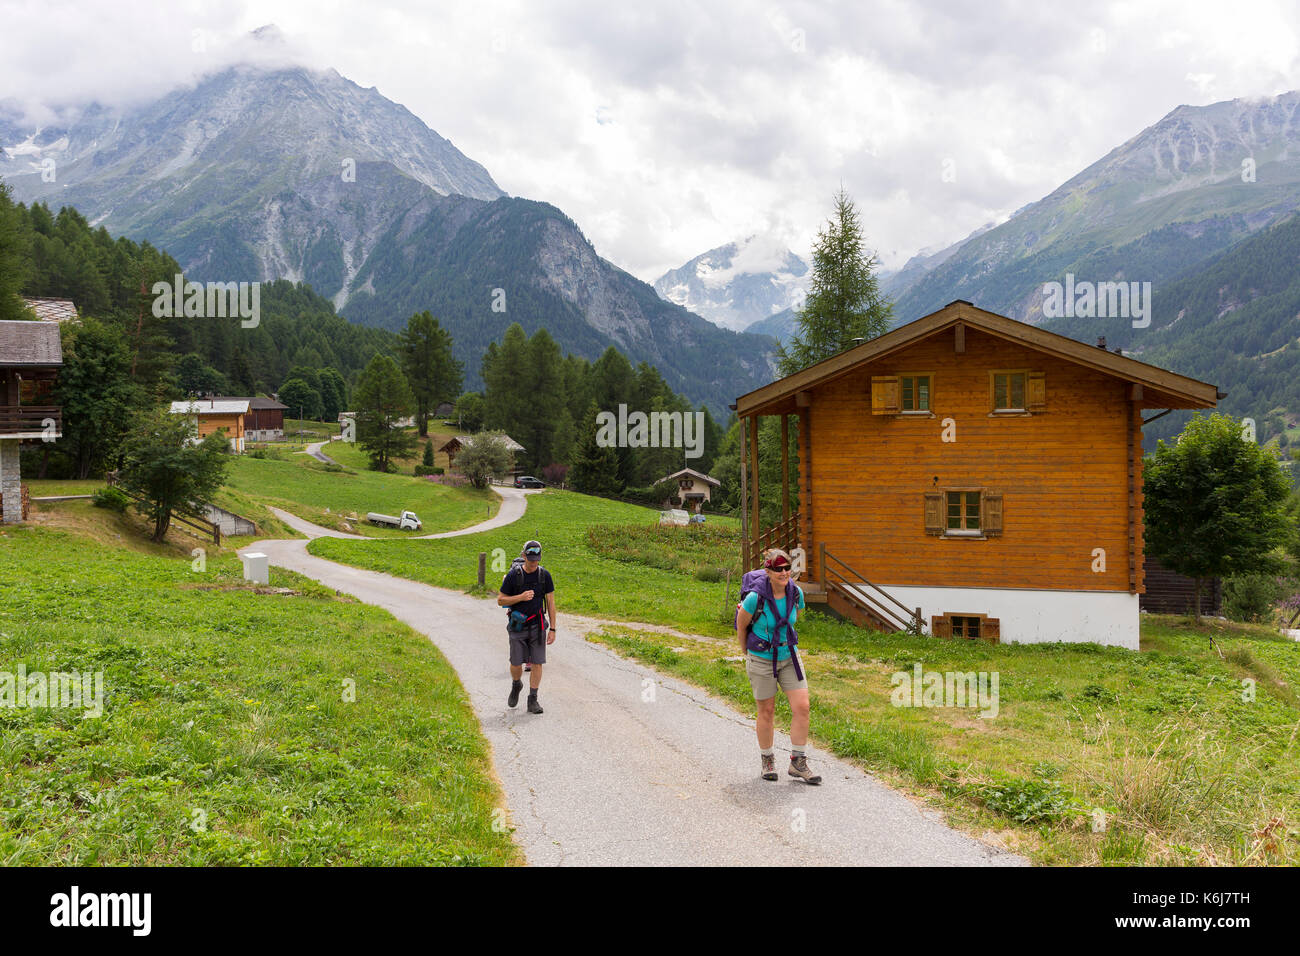 La salvia, Svizzera - escursionisti sulla strada nel villaggio svizzero di la salvia, nelle alpi Pennine. Foto Stock